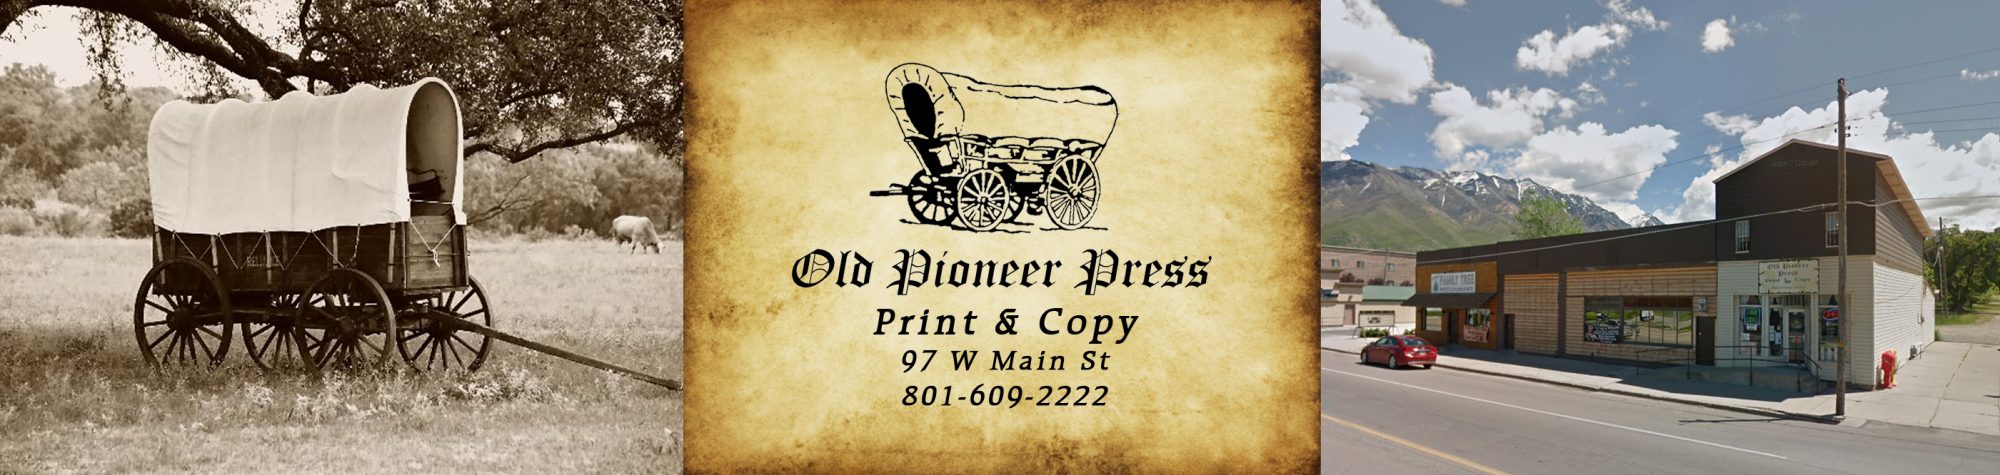 Old Pioneer Press